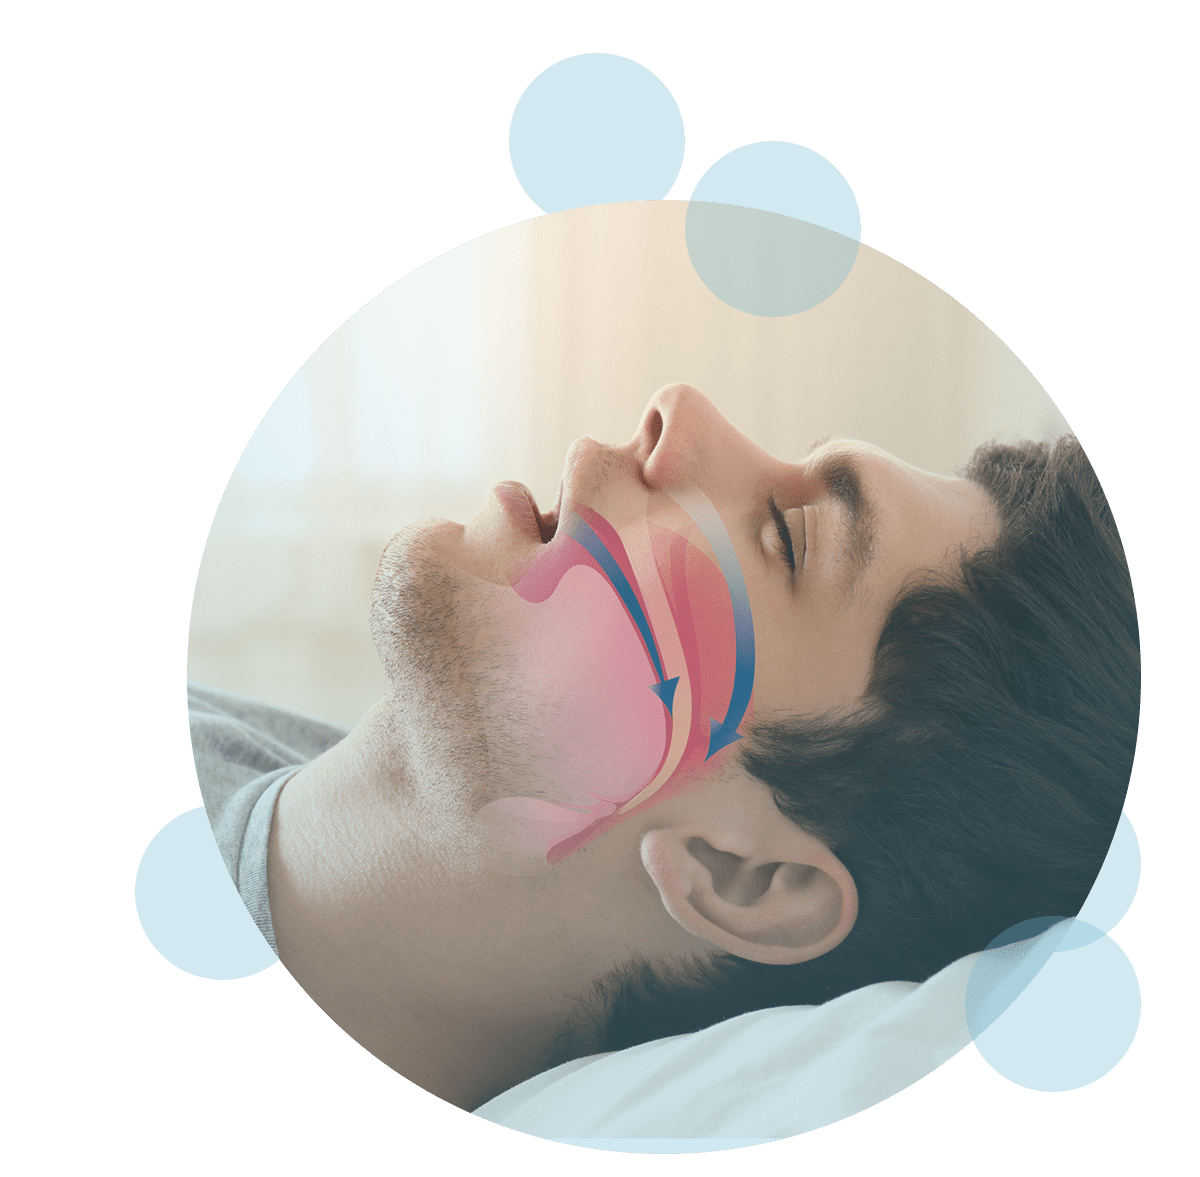 Sleep apnea illustrated image